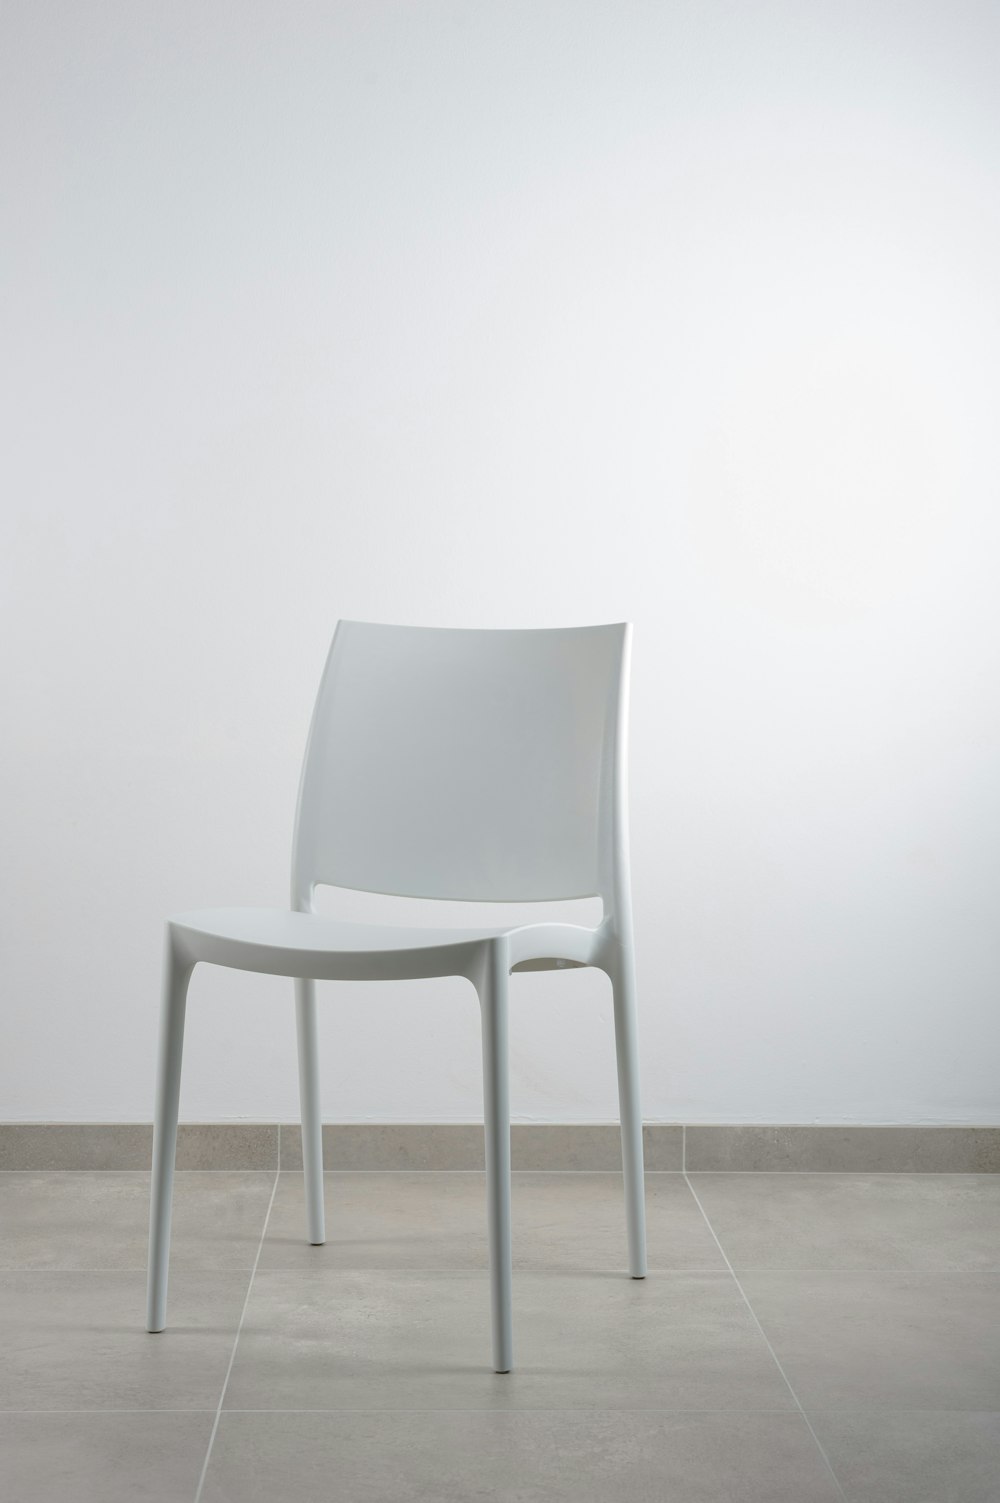 white armless chair near white wall